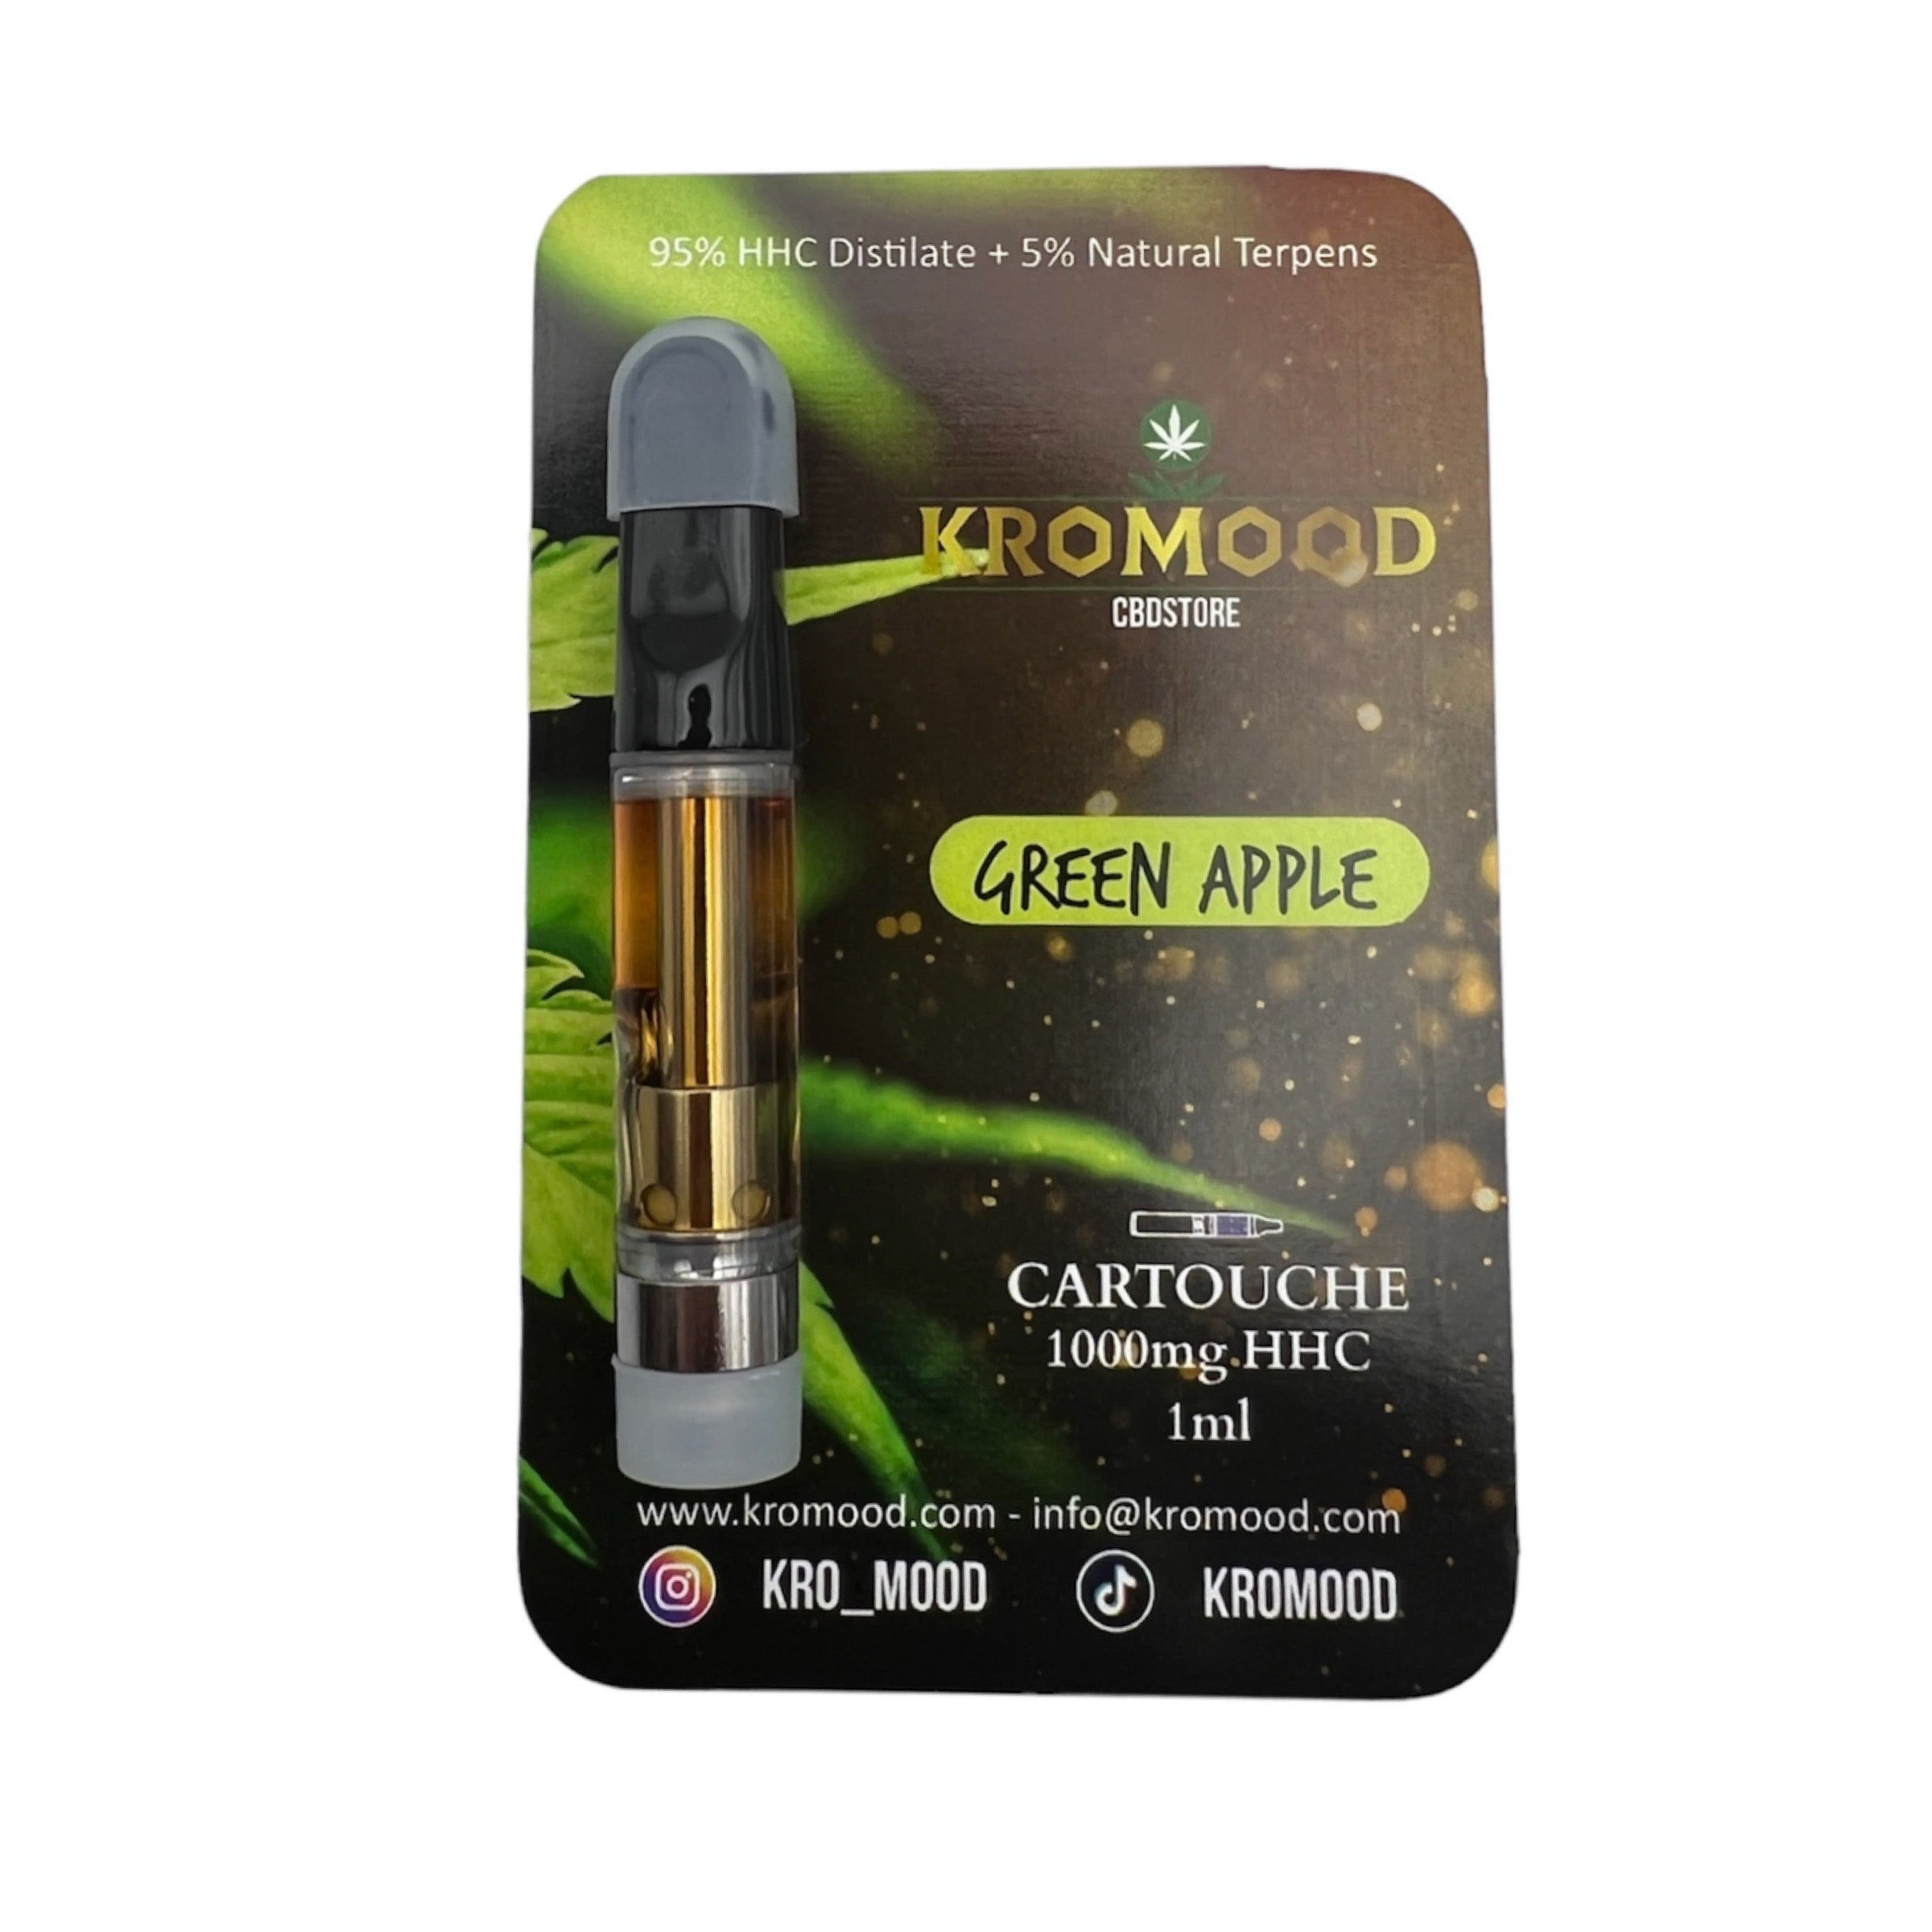 KroMood Cartridge (Dab Pen) of HHC - Green Apple - 95% HHC/1000MG - 600 puffs